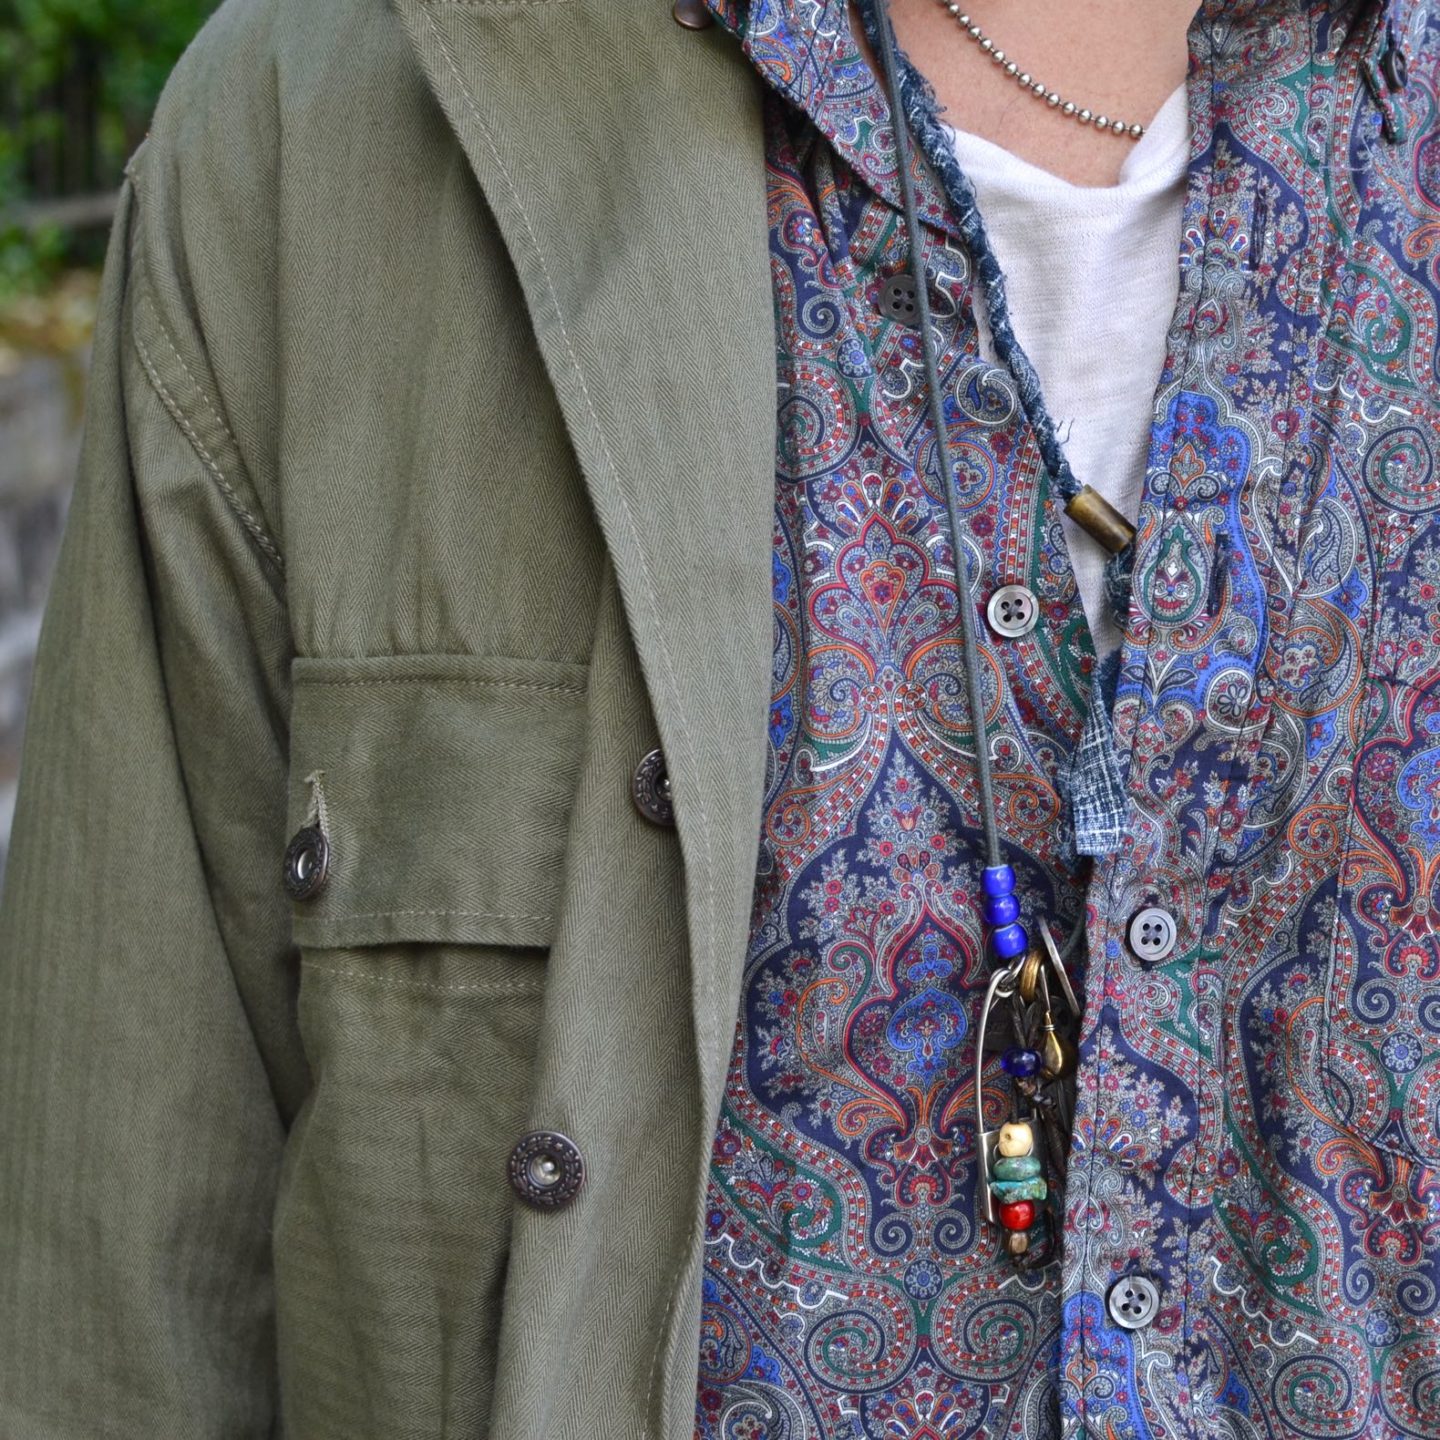 chemise militaire Arashi denim portée aevc une chemise à motif paisley Engineered garments avec un collier homme bijoux argent street heritage shop